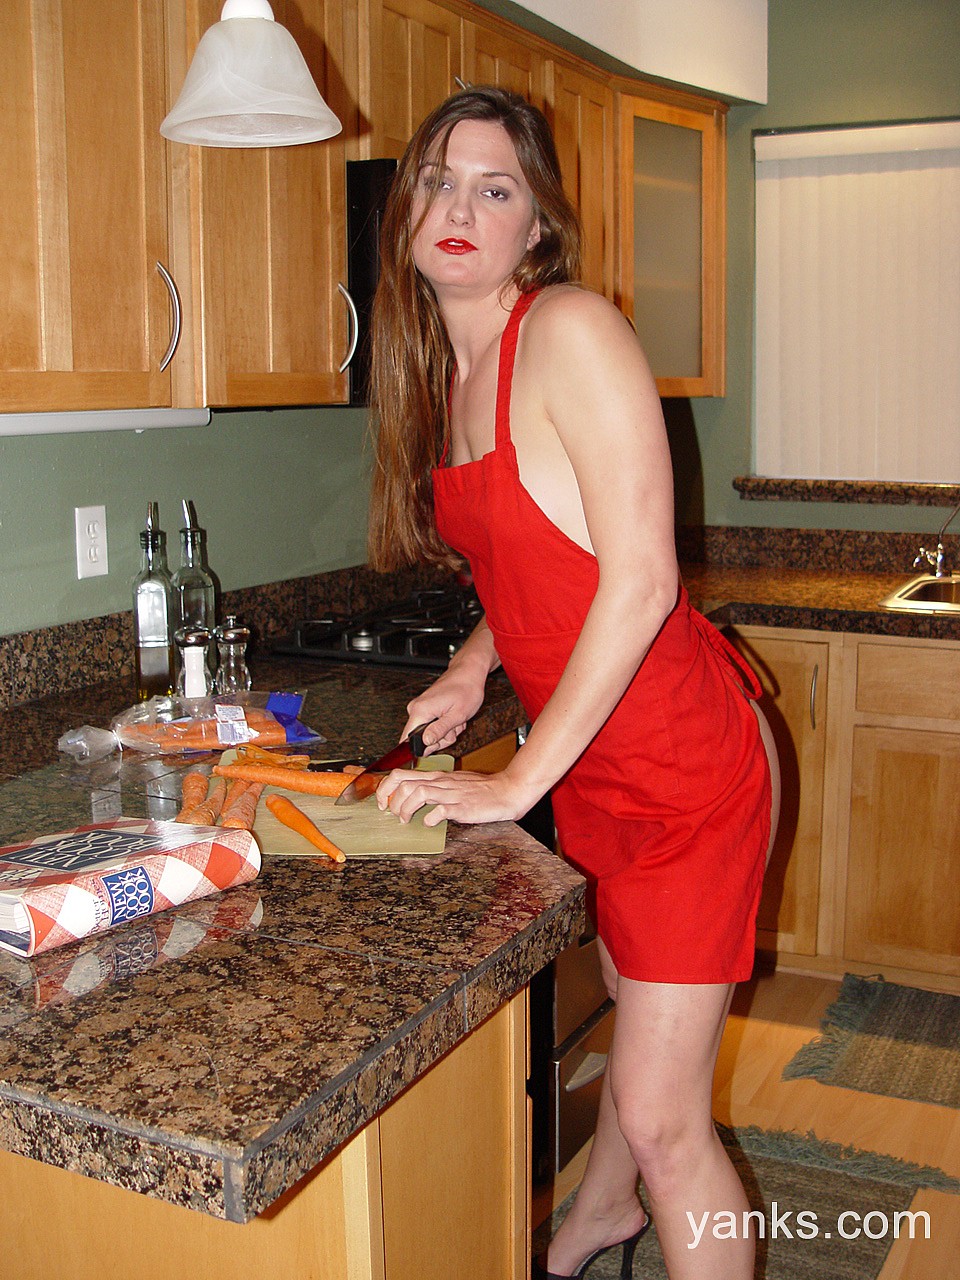 Brunette chick Jessica flashes her natural tits and masturbates in a kitchen porno foto #426996239 | Yanks Pics, Jessica, Dildo, mobiele porno